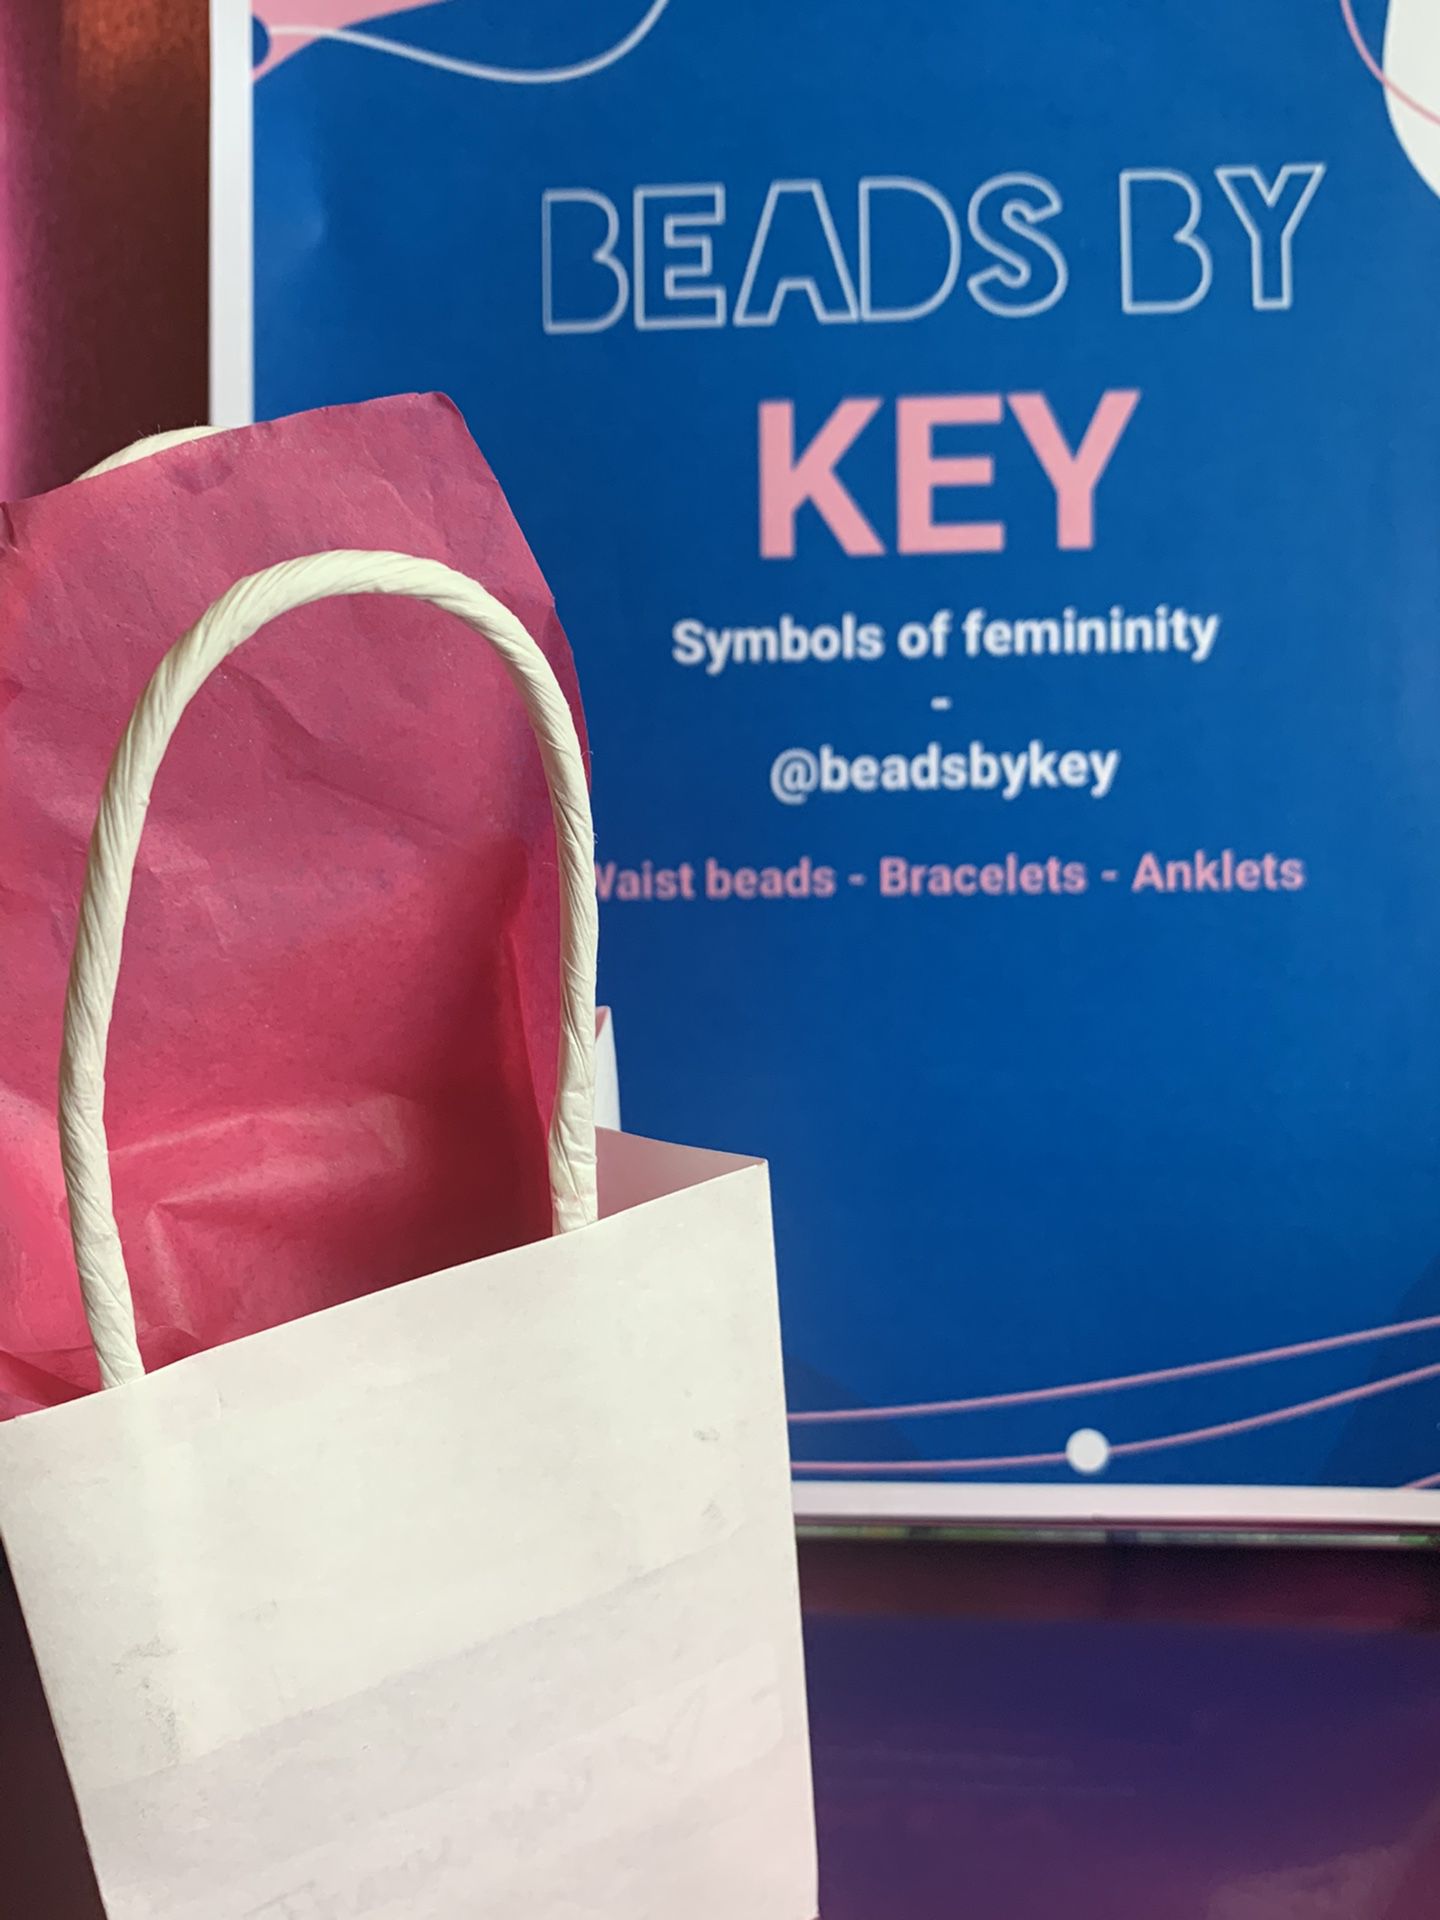 BEADS BY KEY! Waist beads - bracelets - anklets